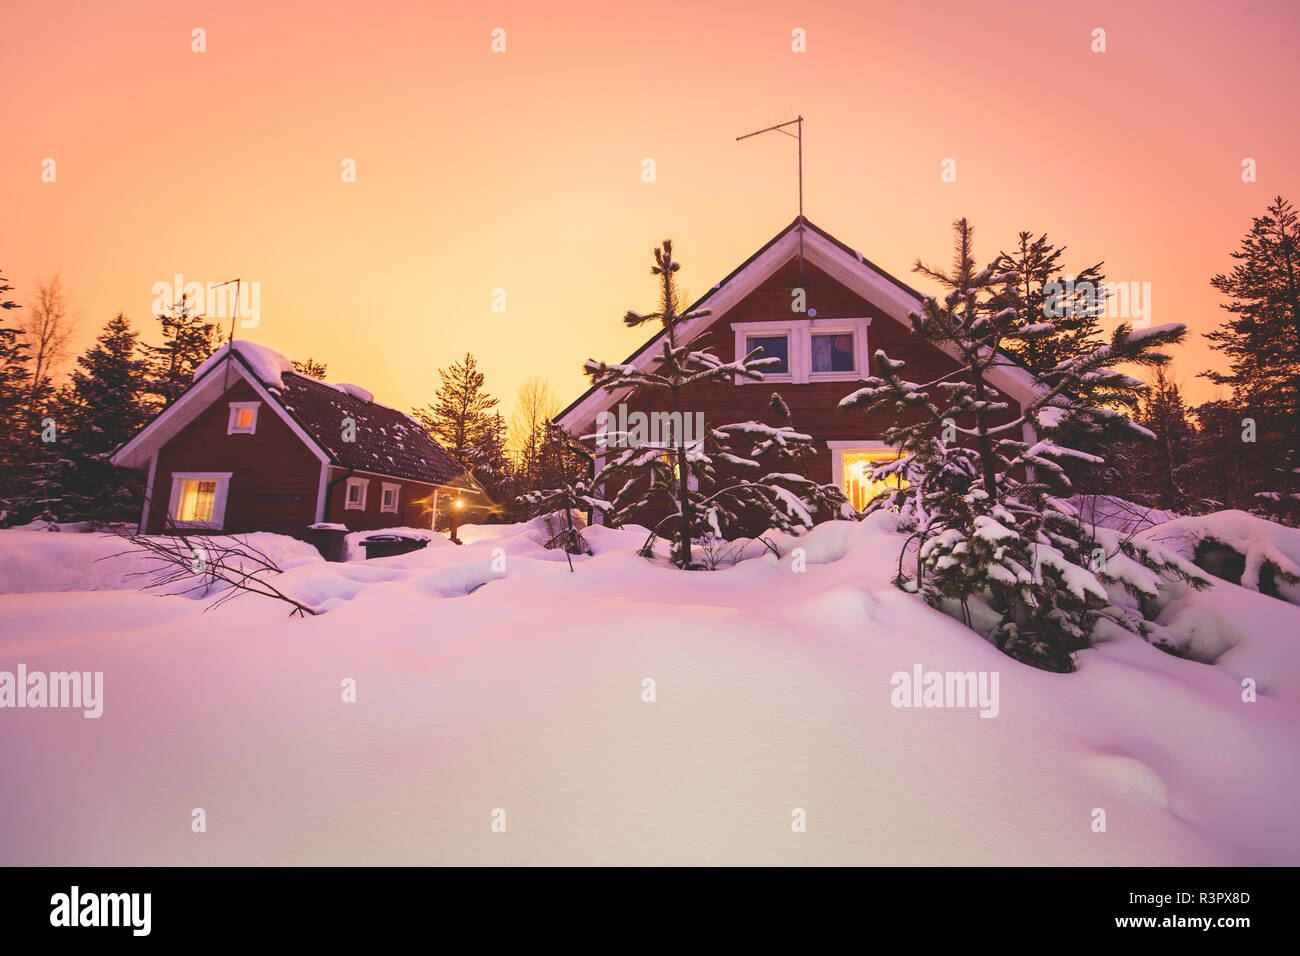 Ein gemütliches Blockhaus cottage Chalet Haus im Schnee in der Nähe von  Skigebiet im Winter mit dem Licht einschalten, abend Bild Stockfotografie -  Alamy